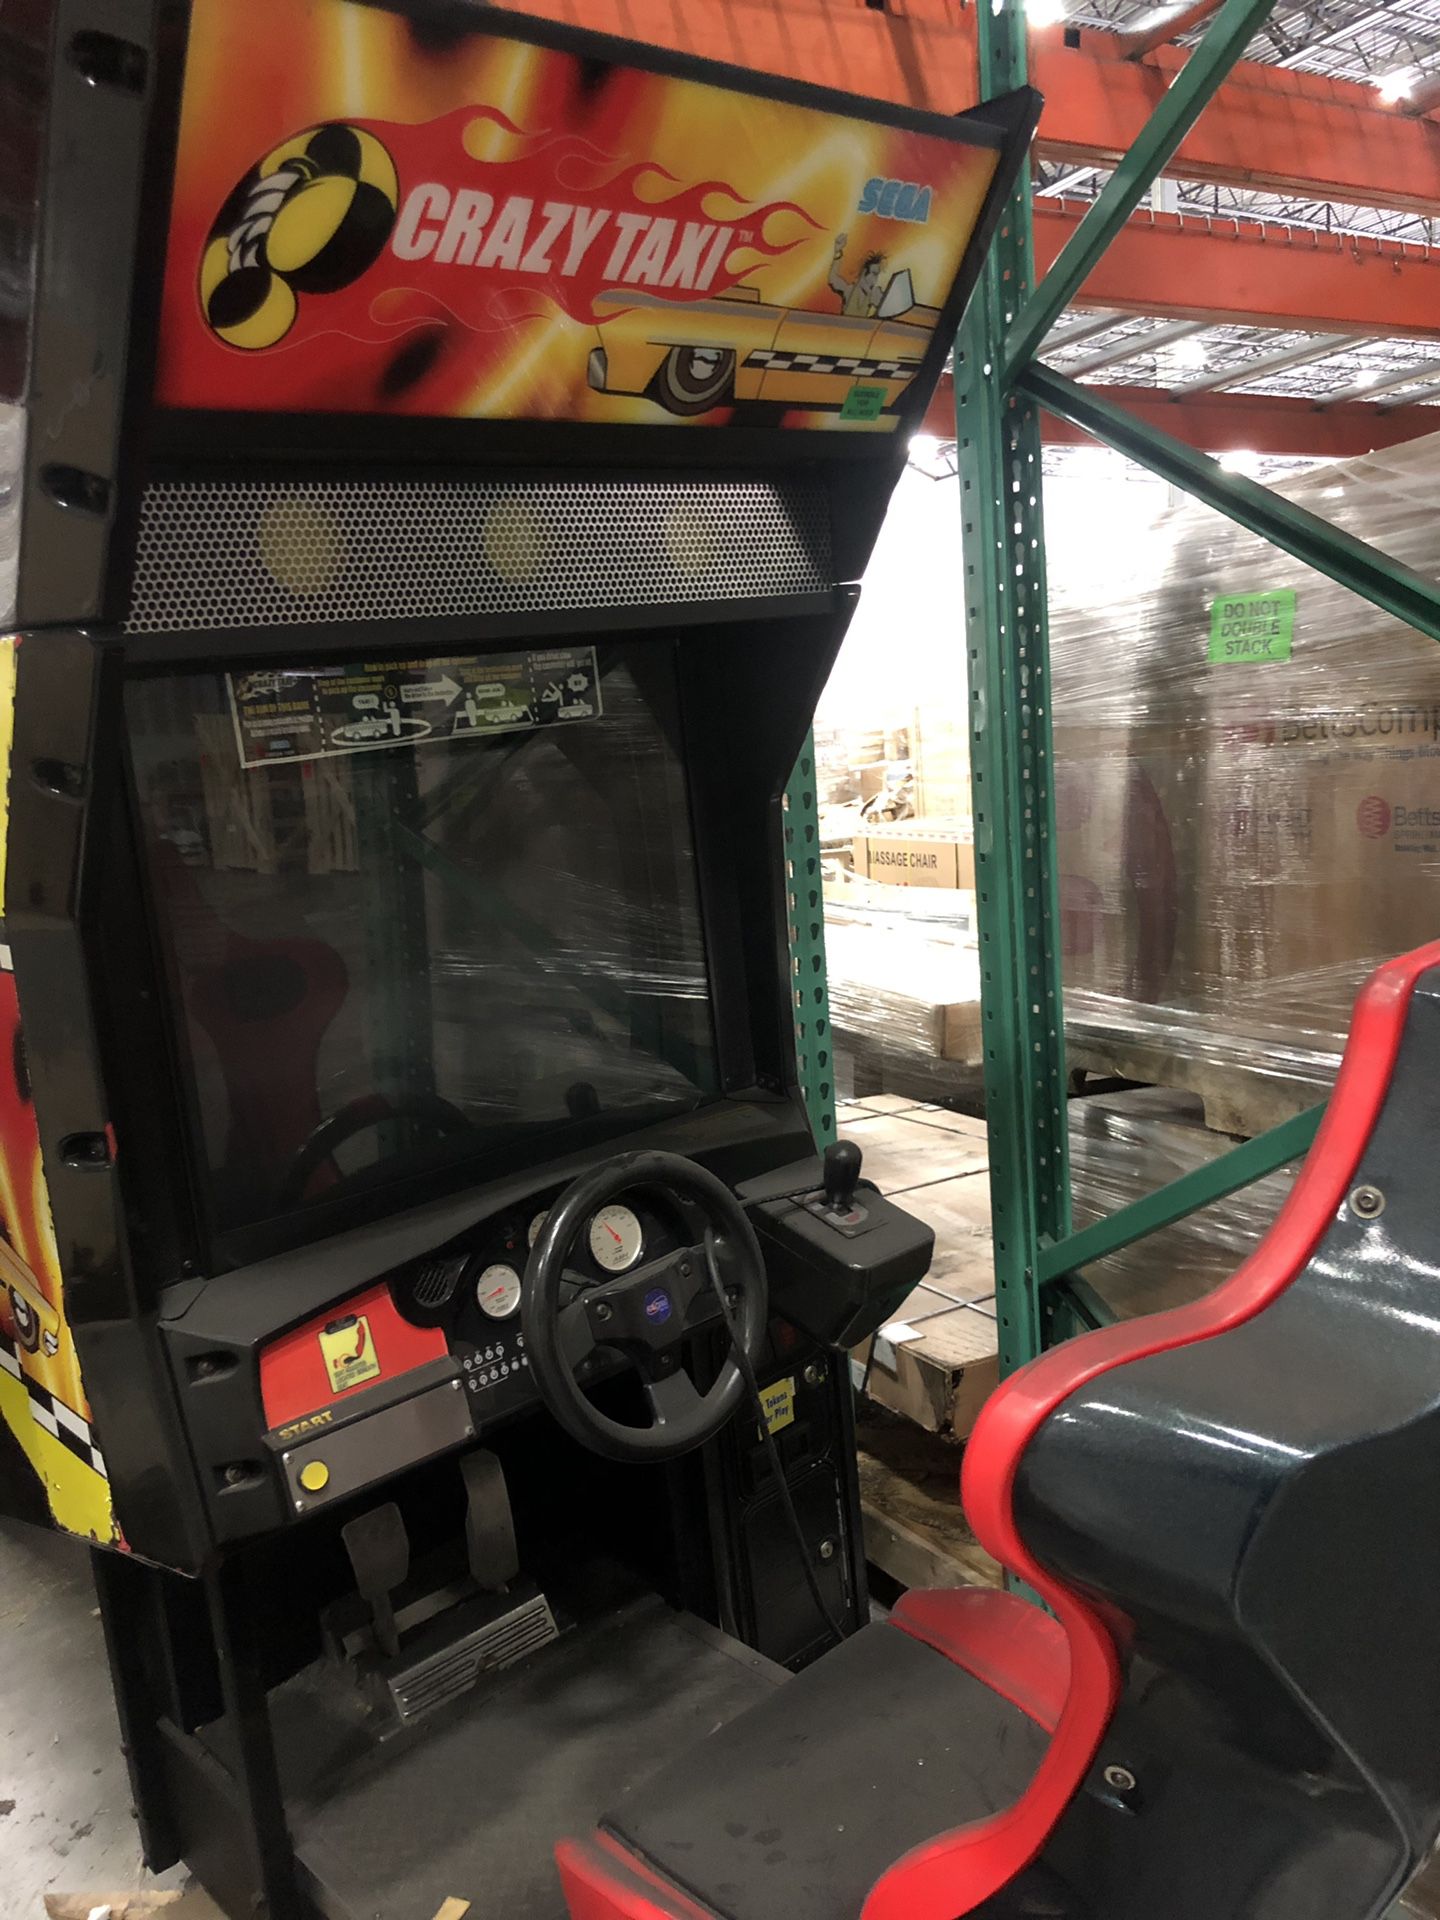 Sega Crazy Taxi Arcade game